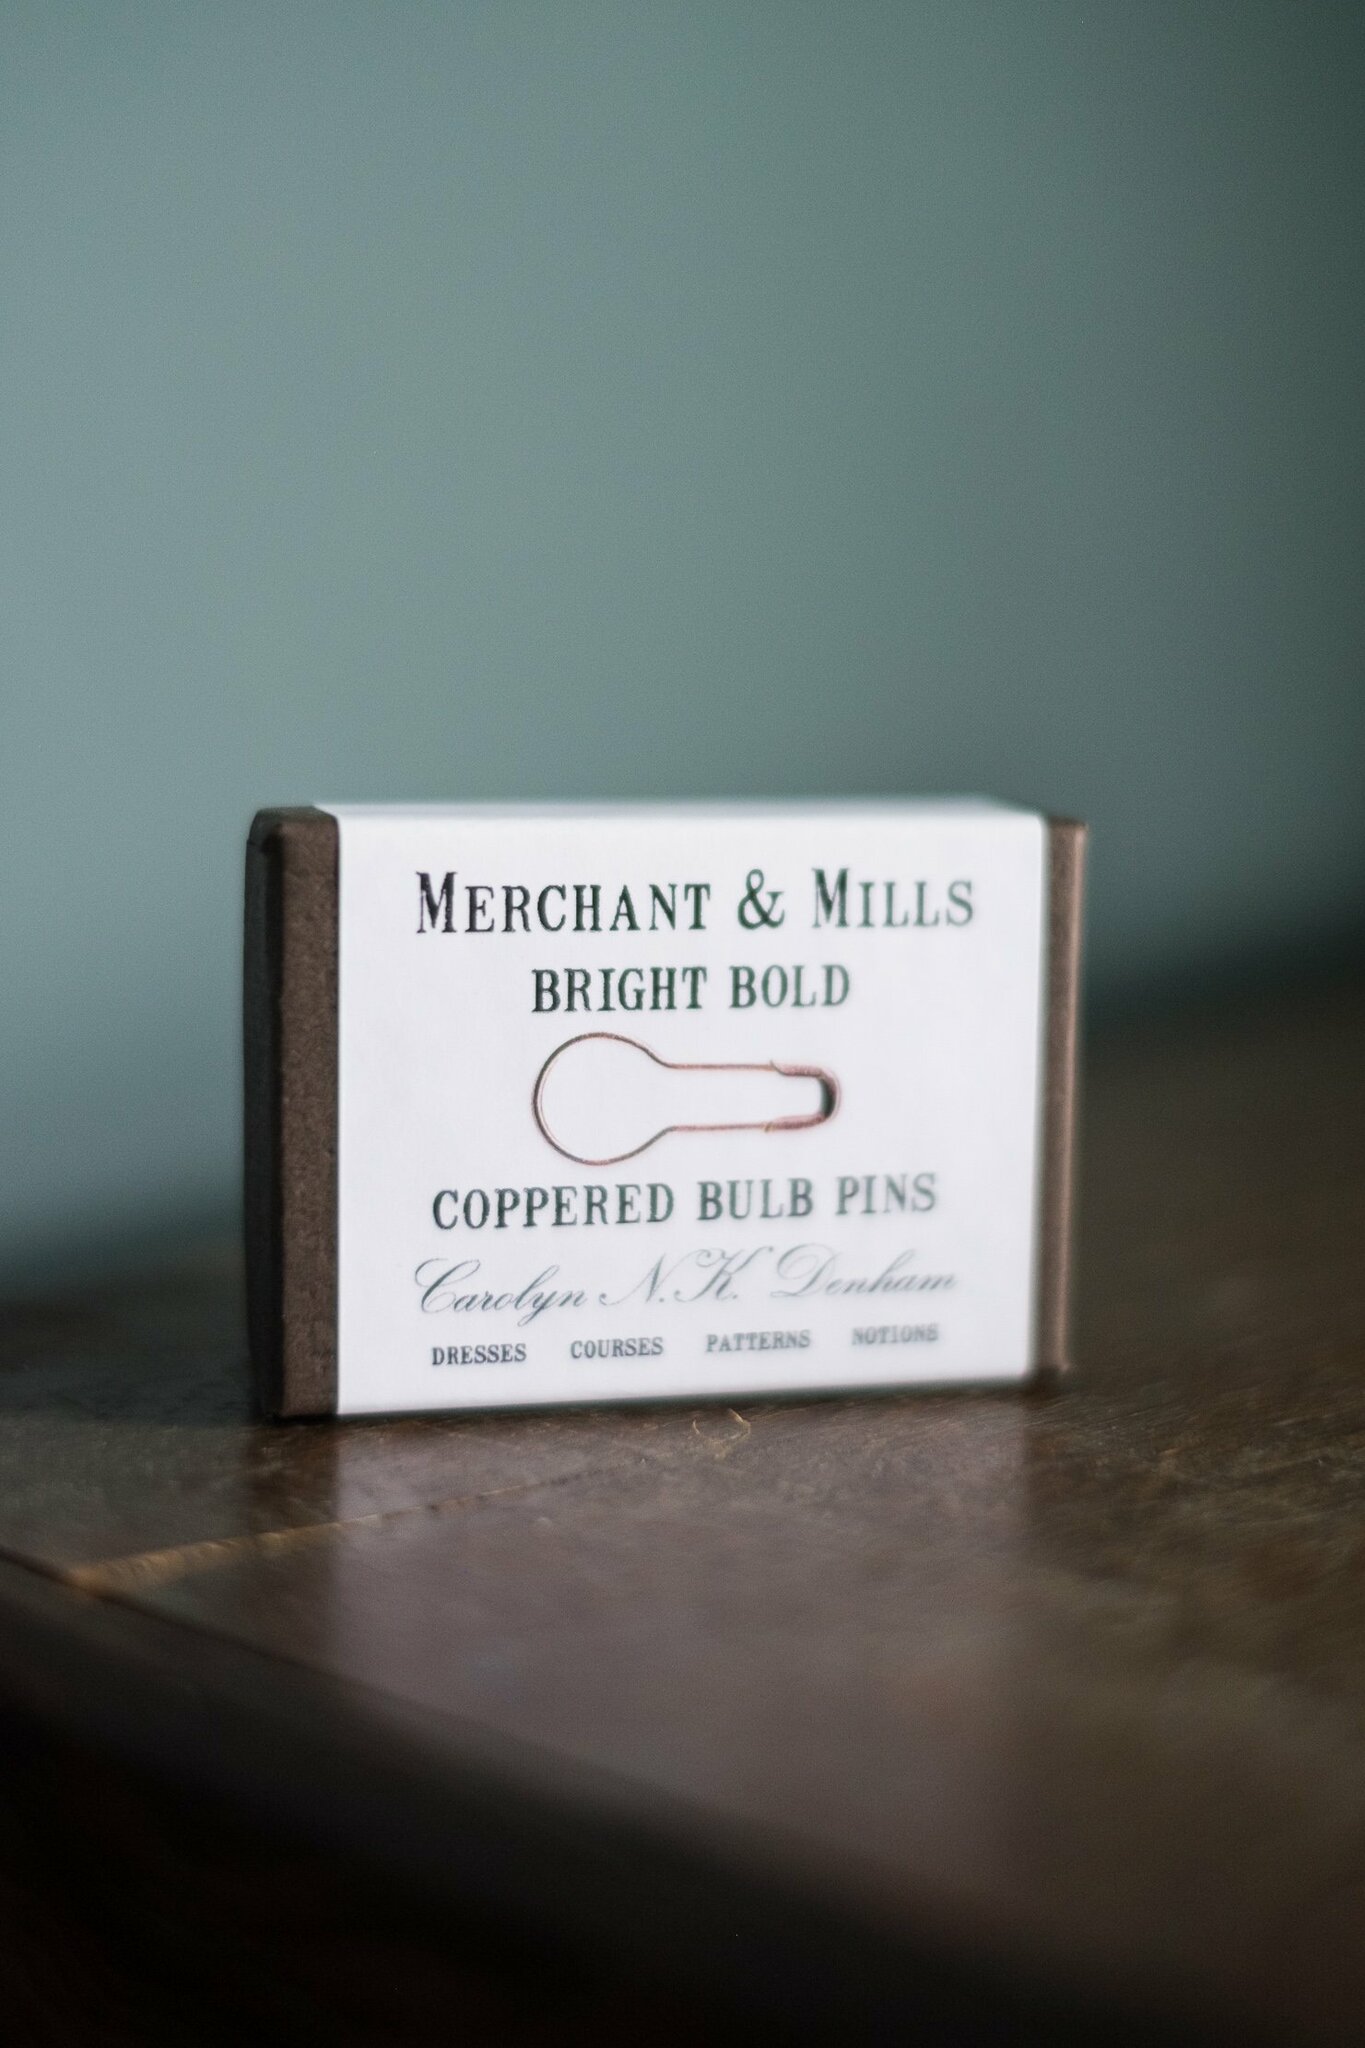 Merchant & Mills Coppered Bulb Pins - kopparfärgade säkerhetsnålar eller stickmarkörer